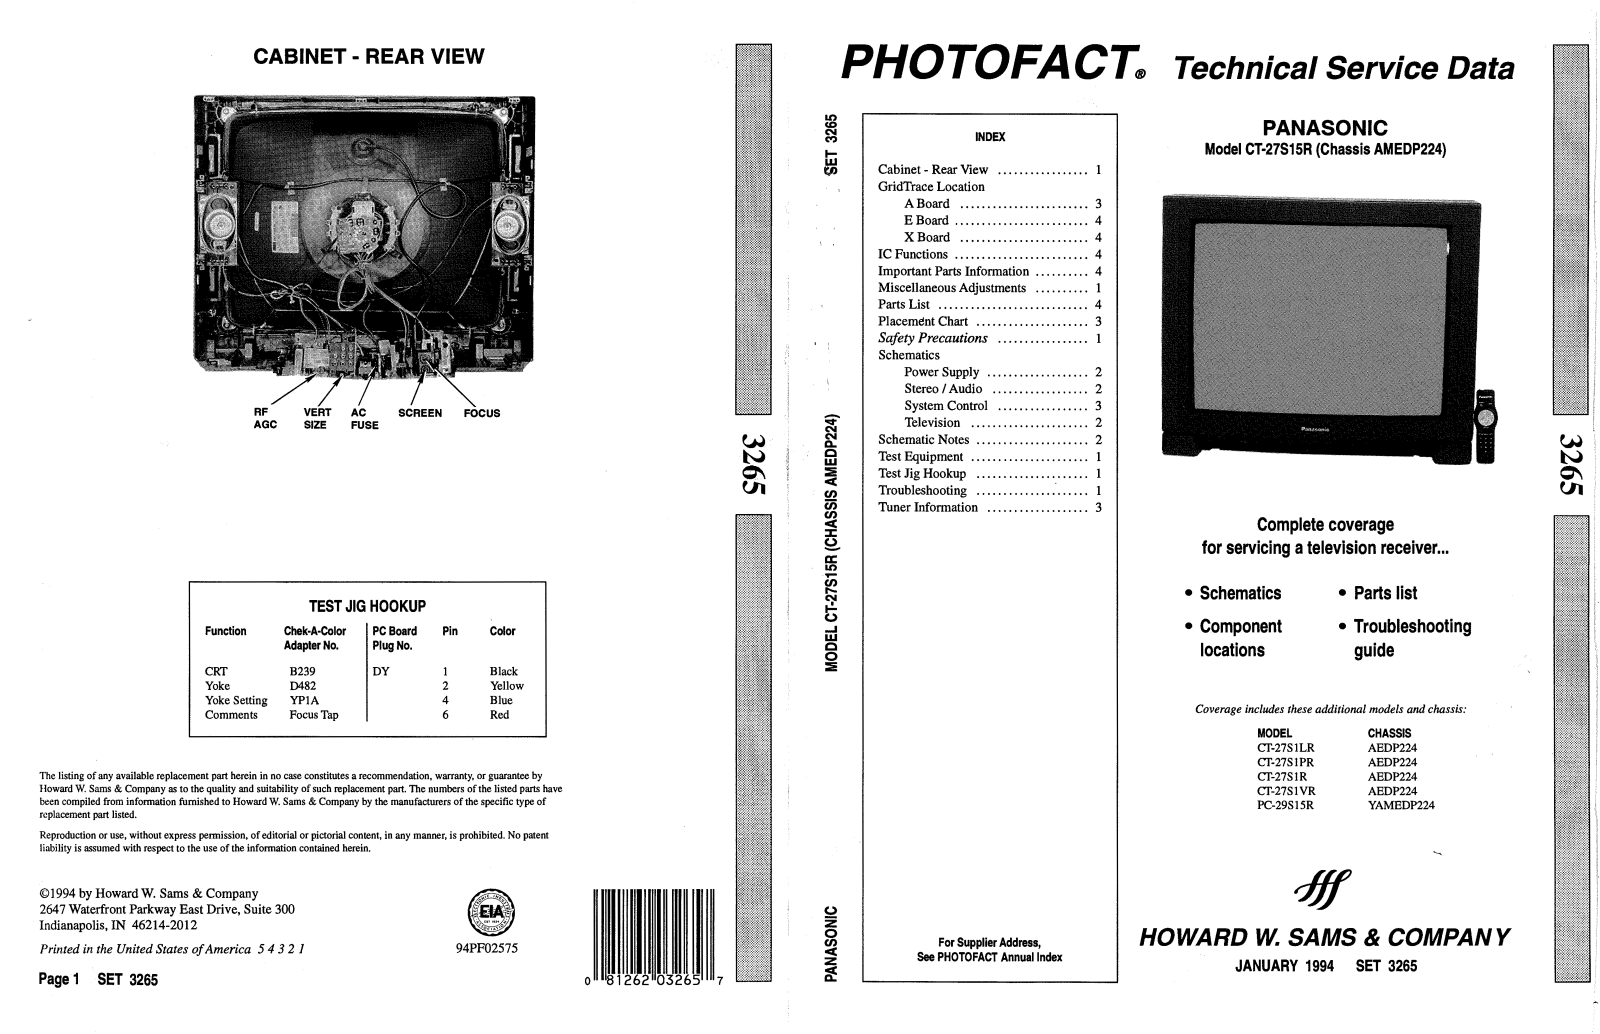 Panasonic 3265 schematic